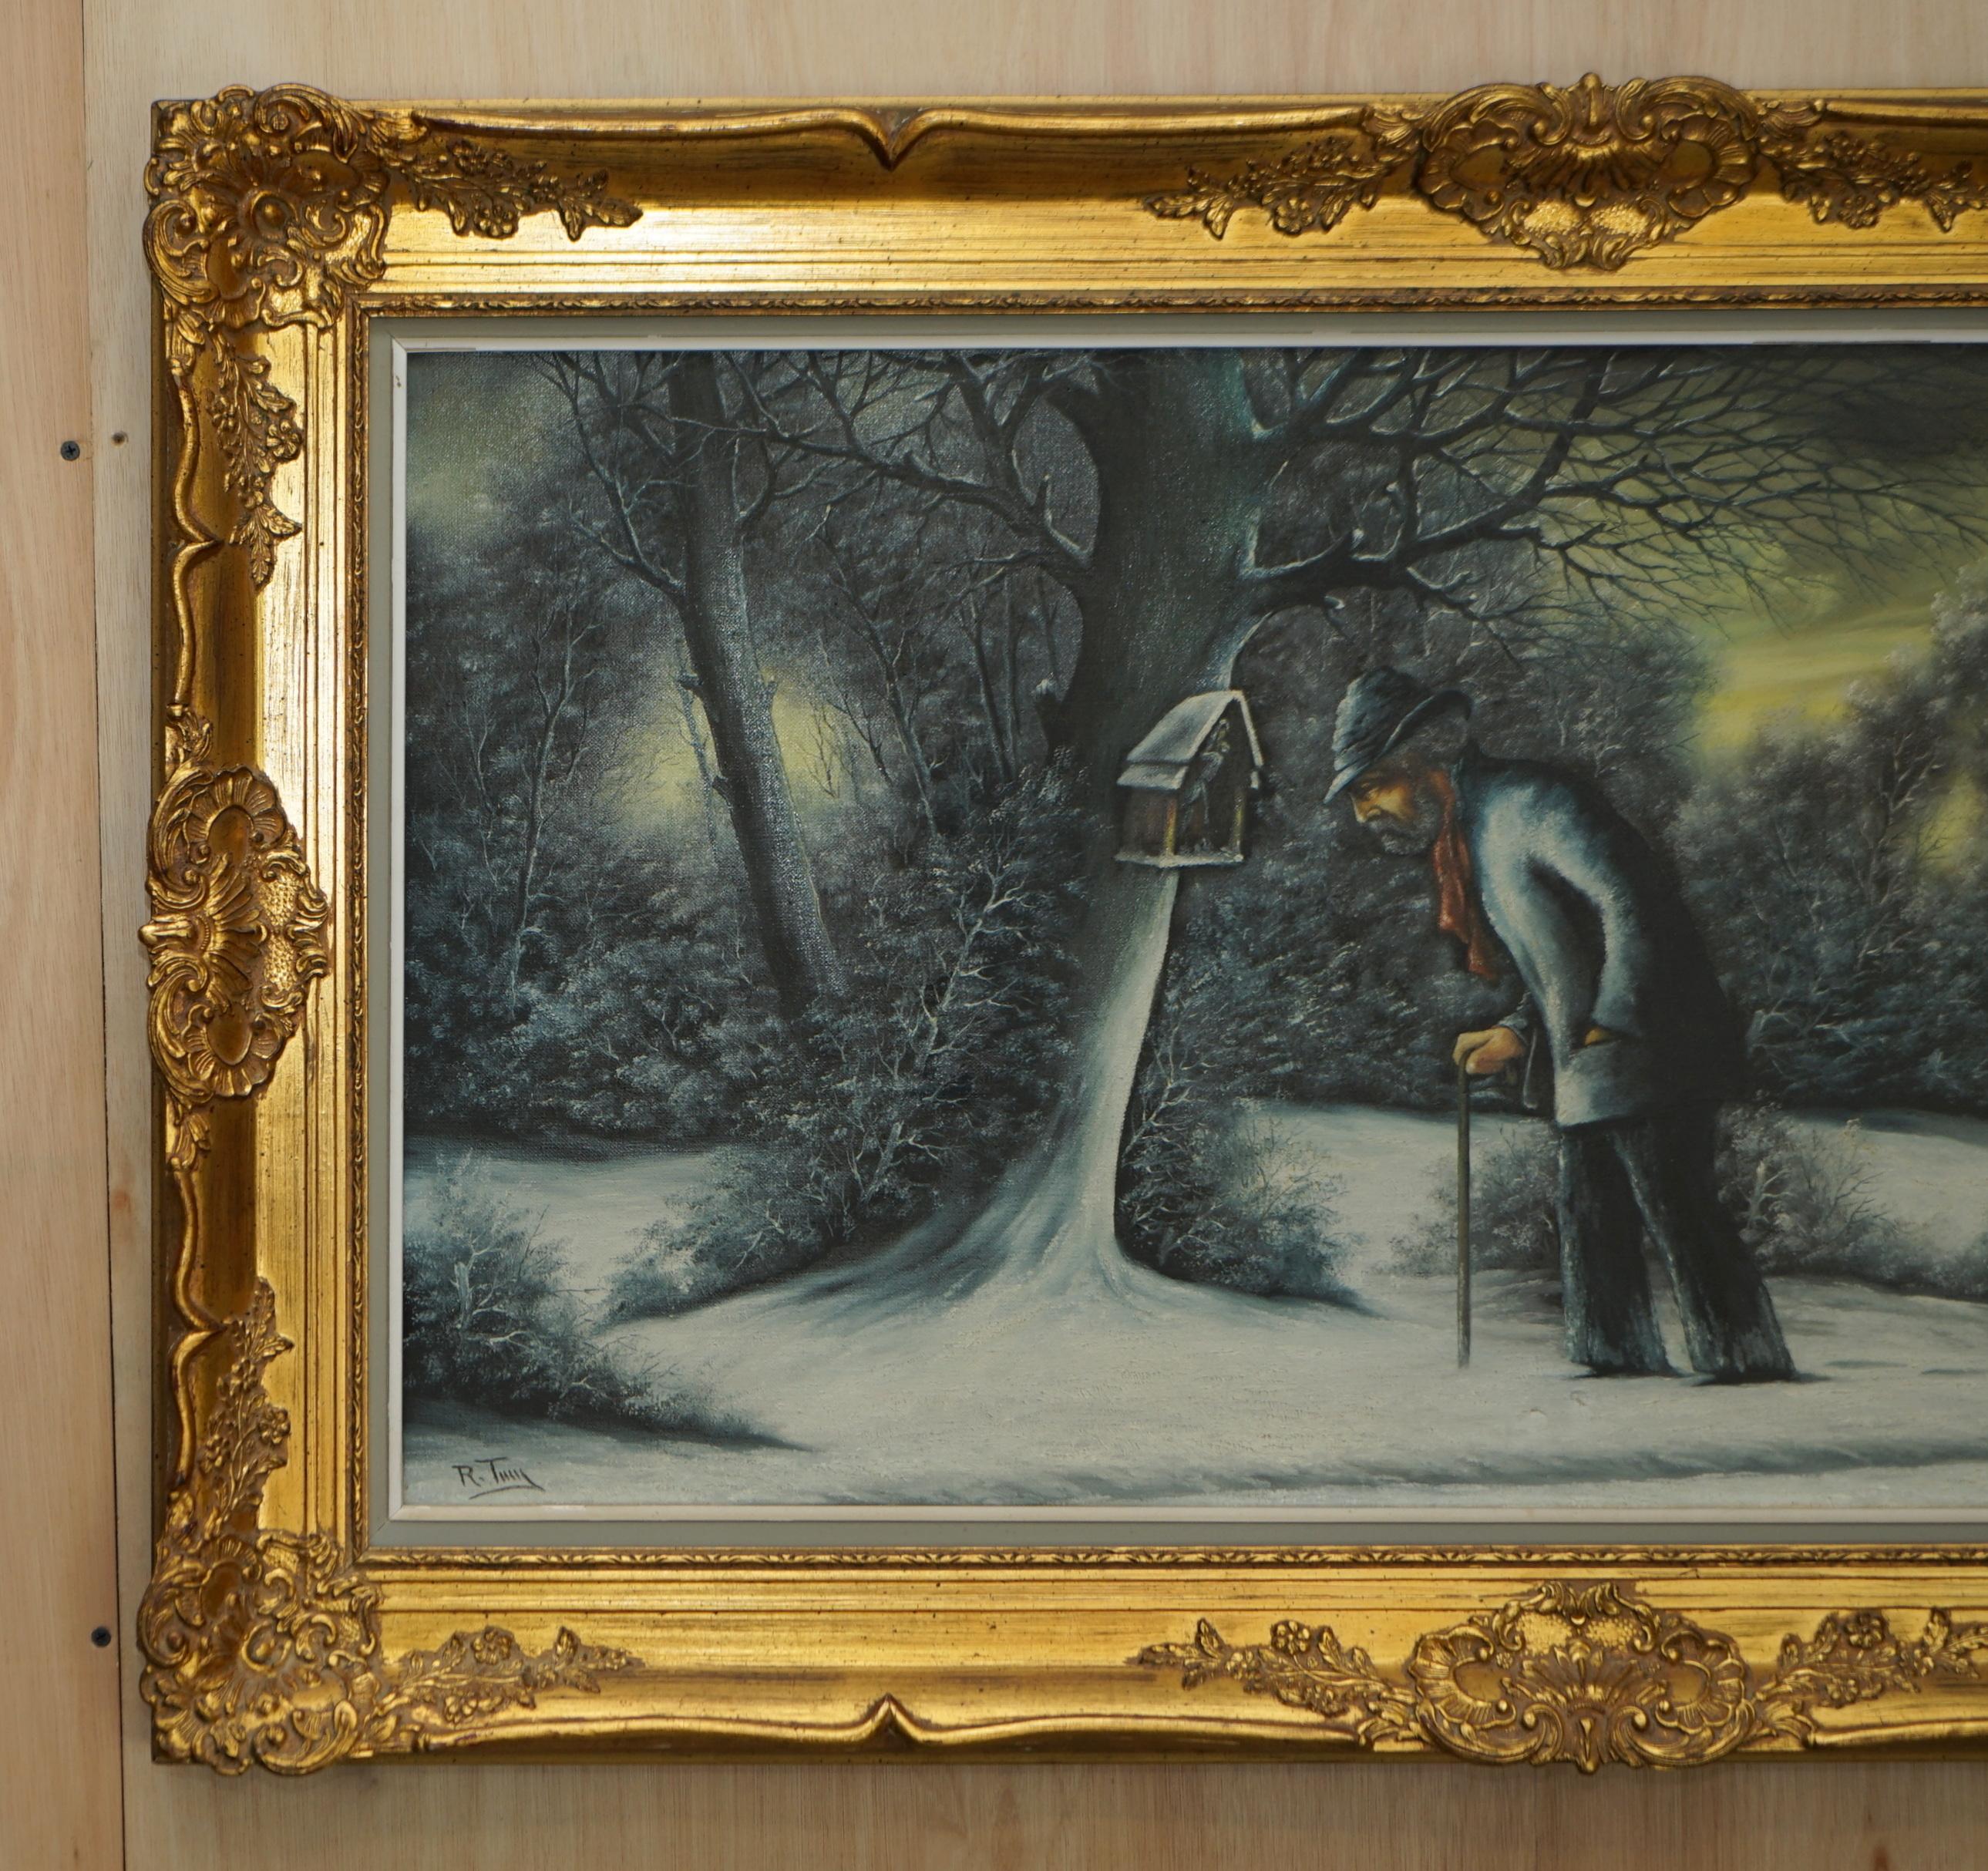 Nous sommes ravis d'offrir à la vente cette superbe peinture à l'huile originale néerlandaise représentant un homme âgé dans une scène d'hiver par R Tuiy 
Une peinture à l'huile très belle et décorative, plus grande que la normale et qui offre